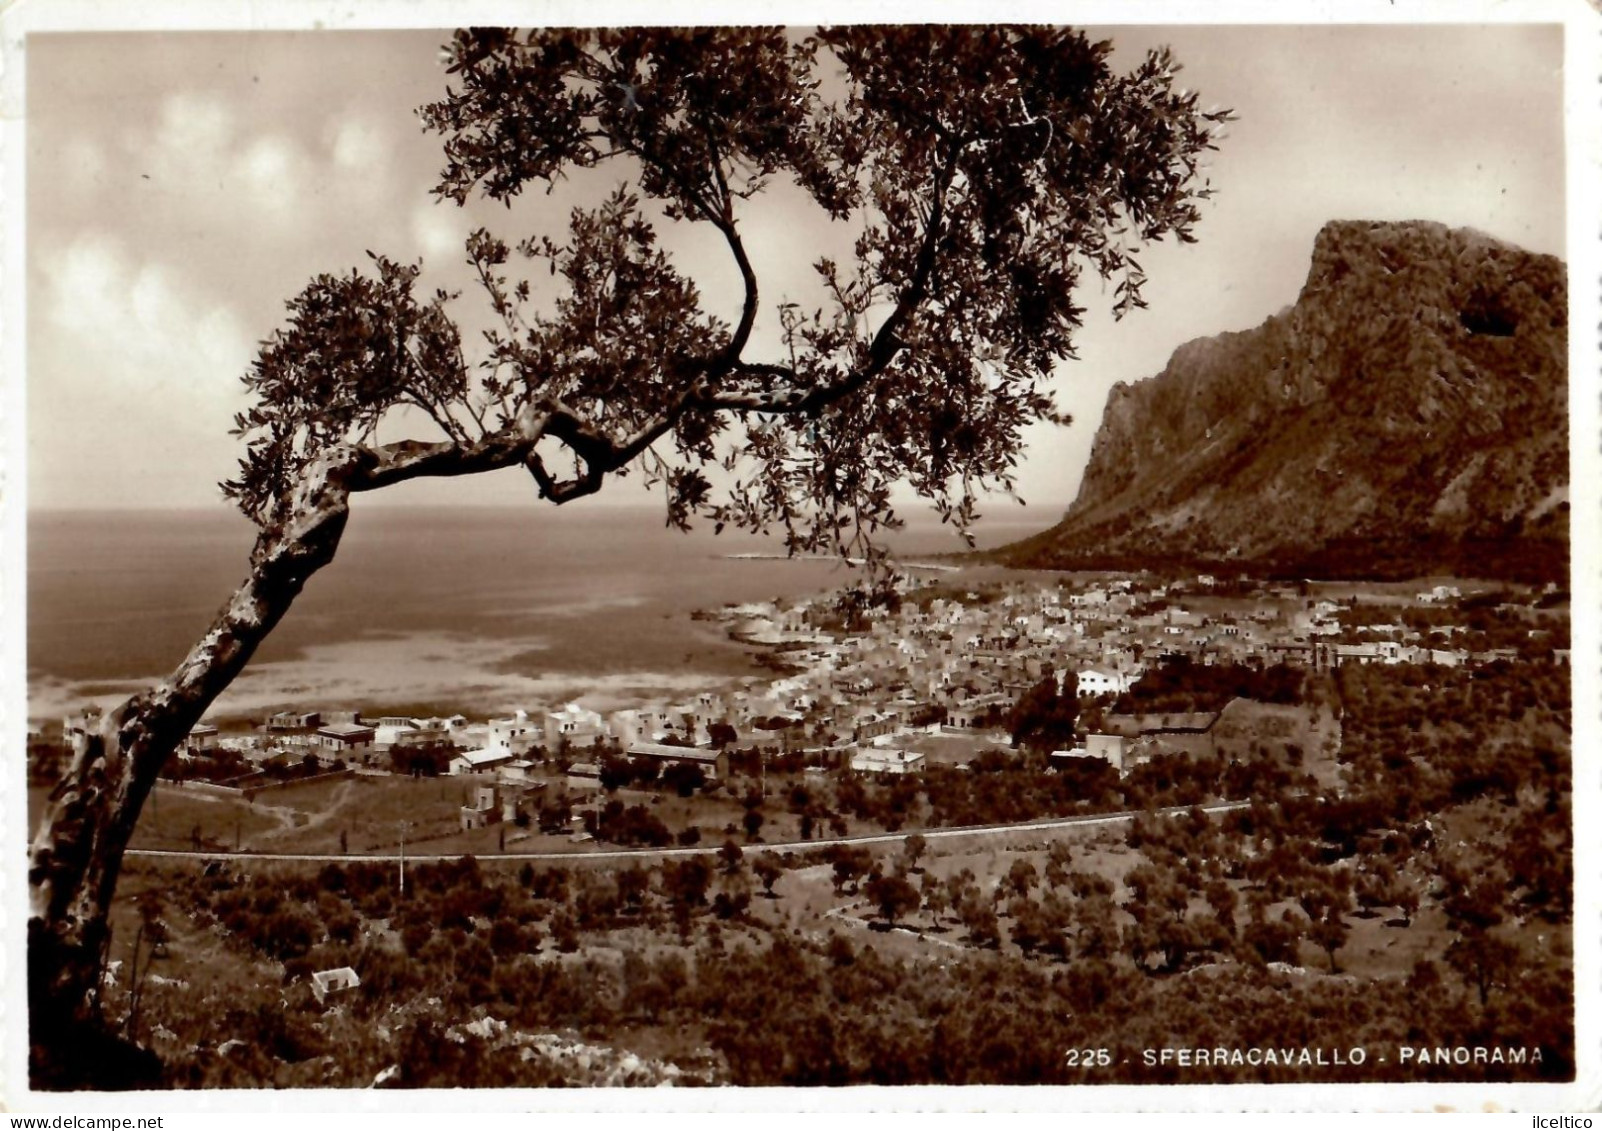 SFERRACAVALLO - PANORAMA - 1949 - Palermo